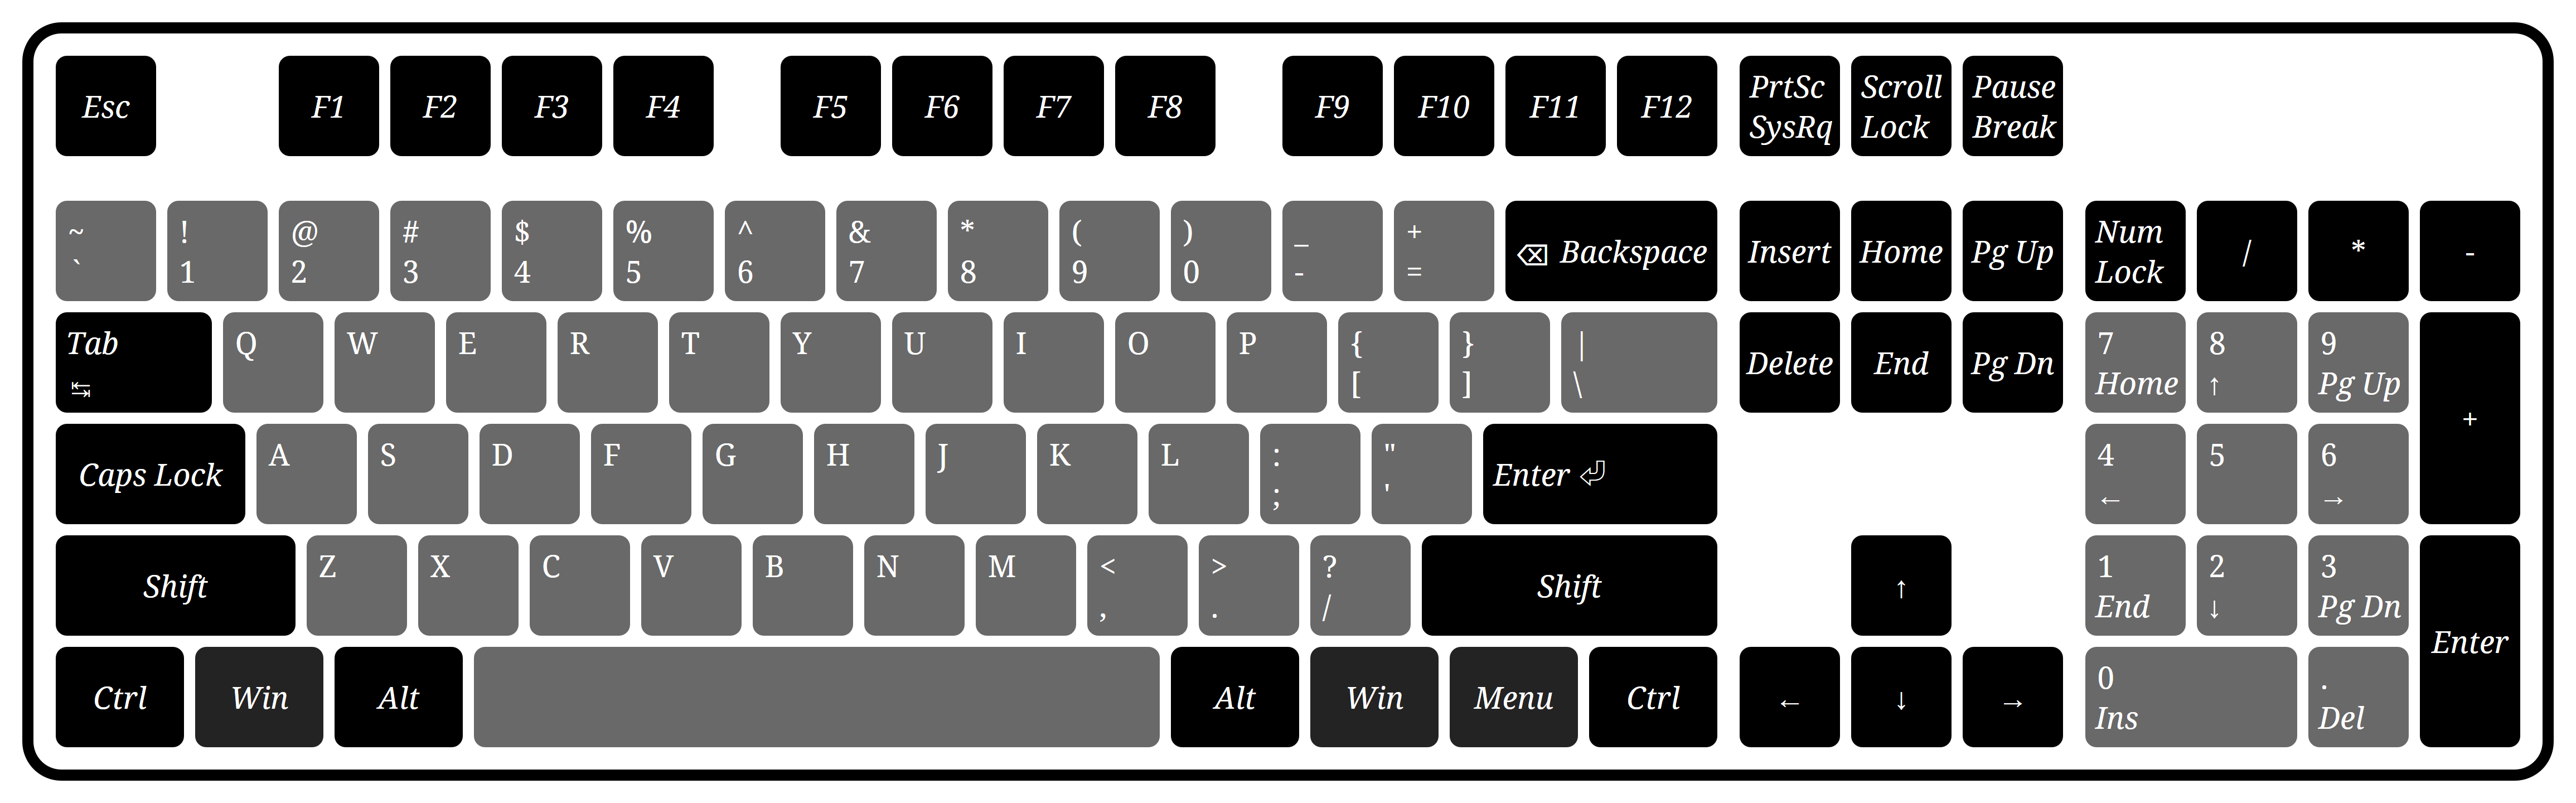 键盘键位图高清108键-舒适高效：108键布局设计考虑用户使用效率